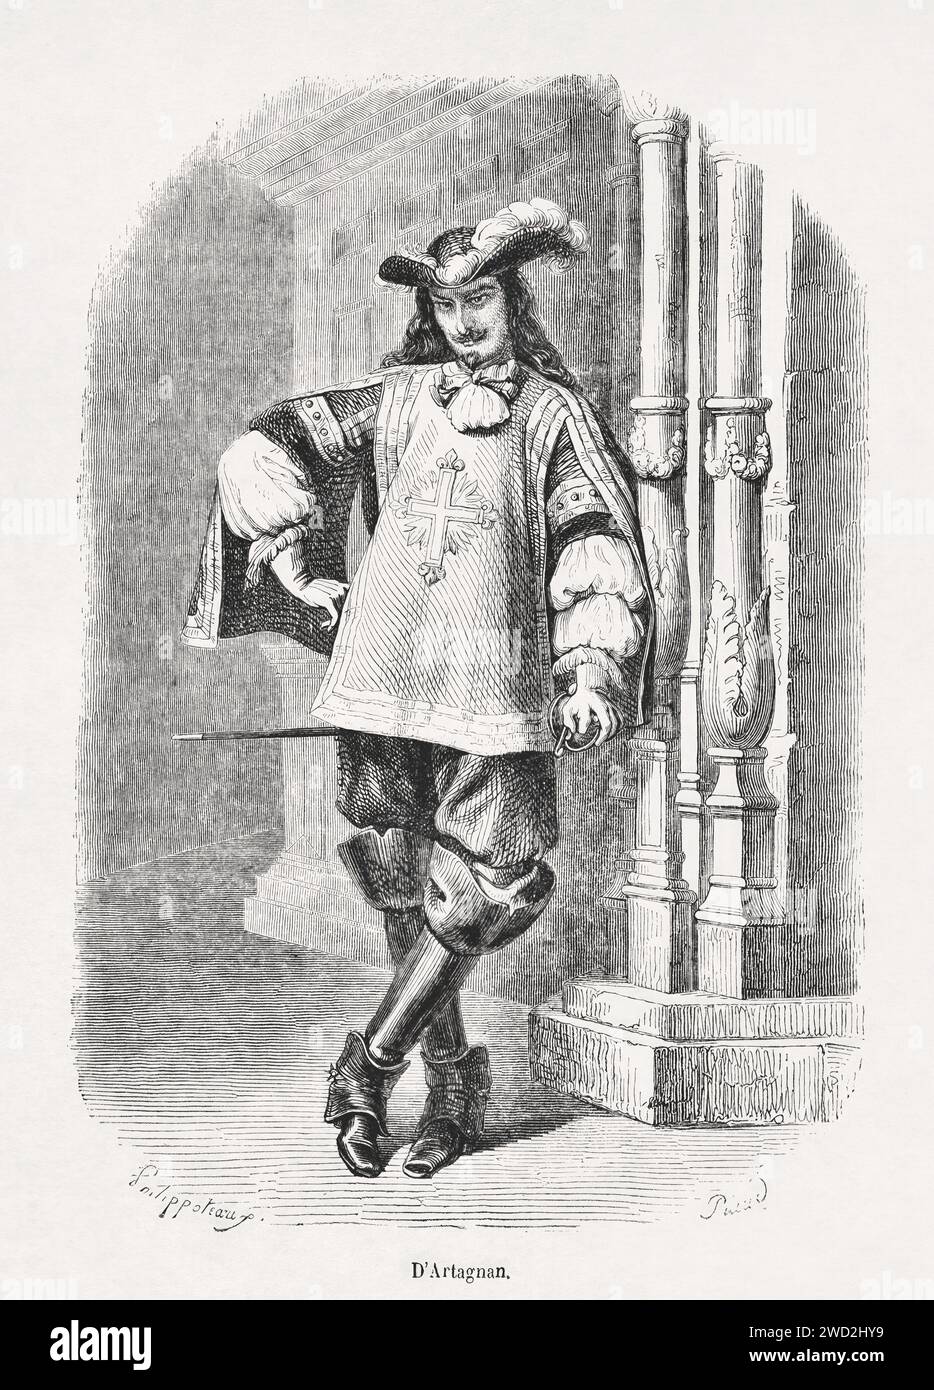 Abbildung von Charles de Batz de Castelmore (auch bekannt als d'Artagnan und später Graf d'Artagnan), Kapitän der Kompanie der Musketiere des Königs b Stockfoto